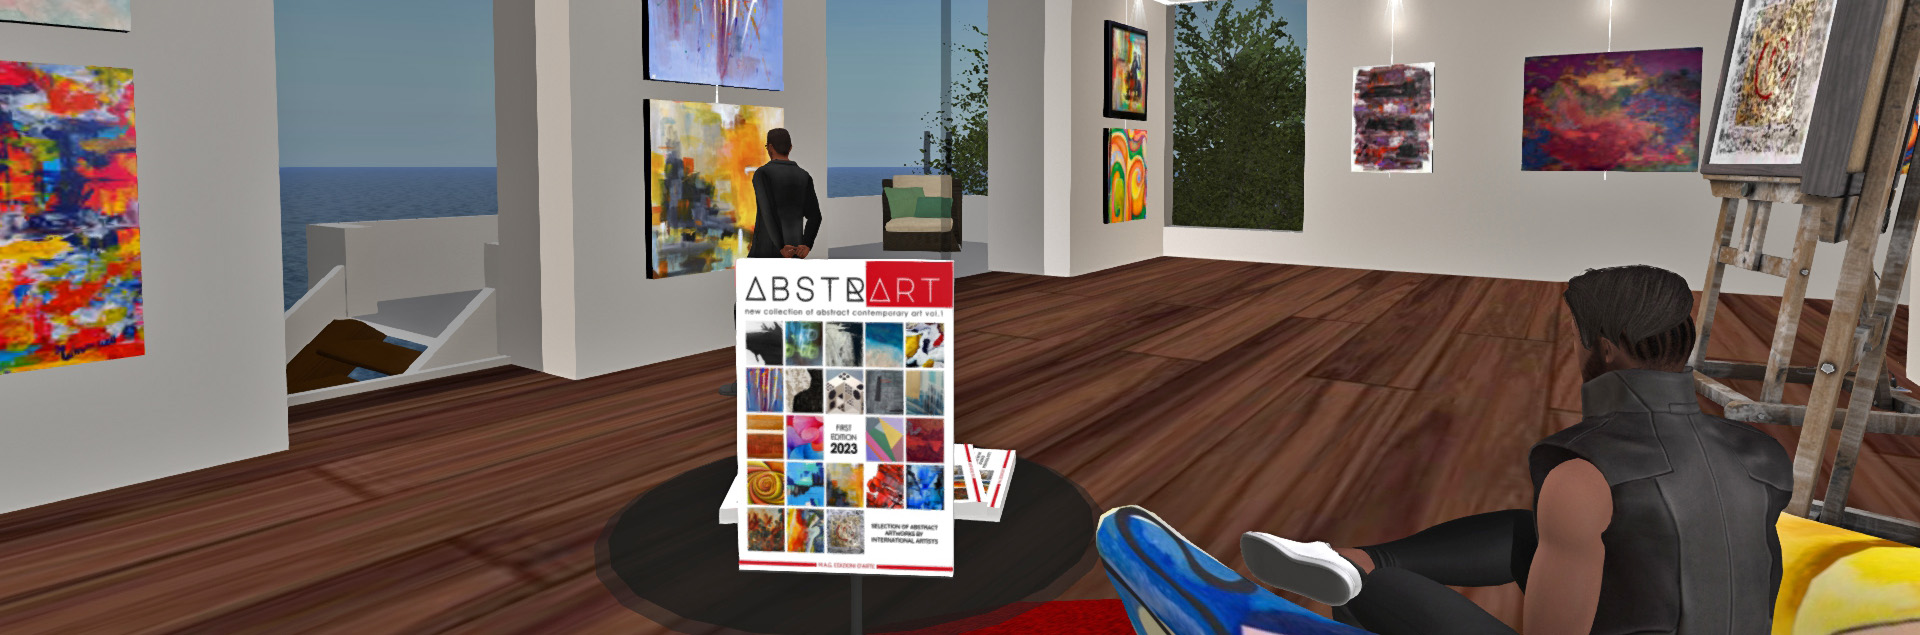 foto scattata nella galleria virtuale nel metaverso di second life per la mostra del volume d'arte Abstrart 1